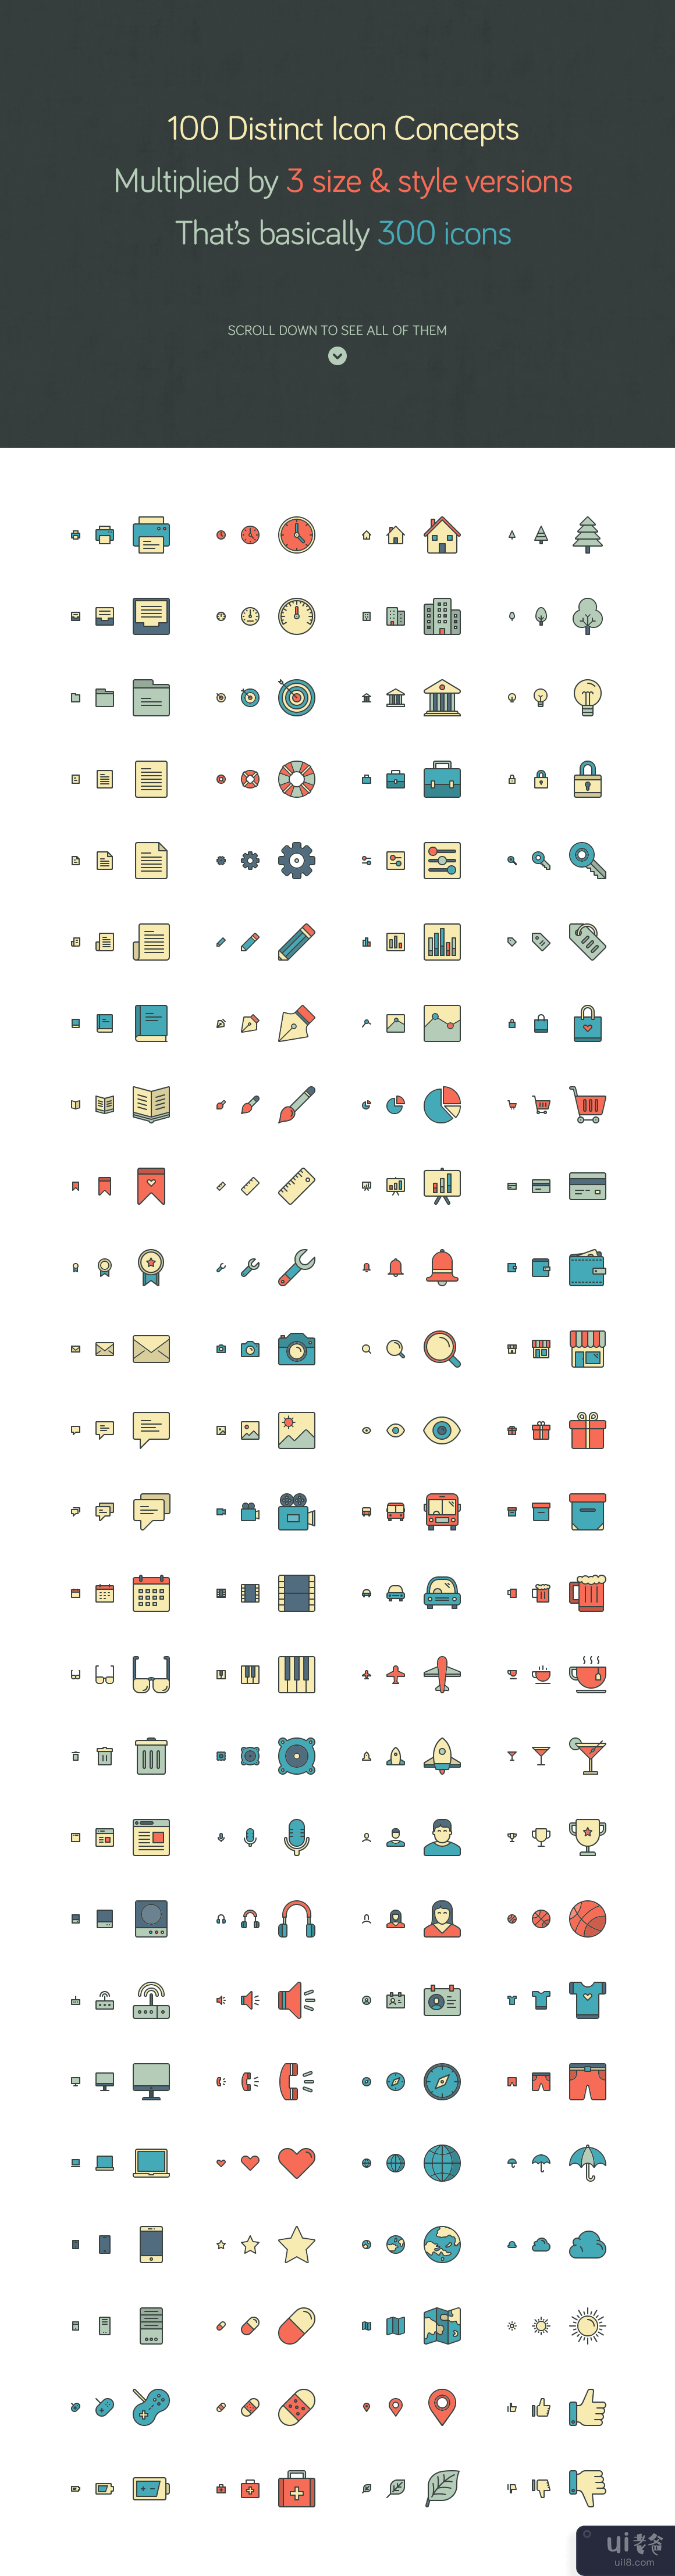 响应式图标 - 完整包(Responsive Icons – The Complete Pack)插图1